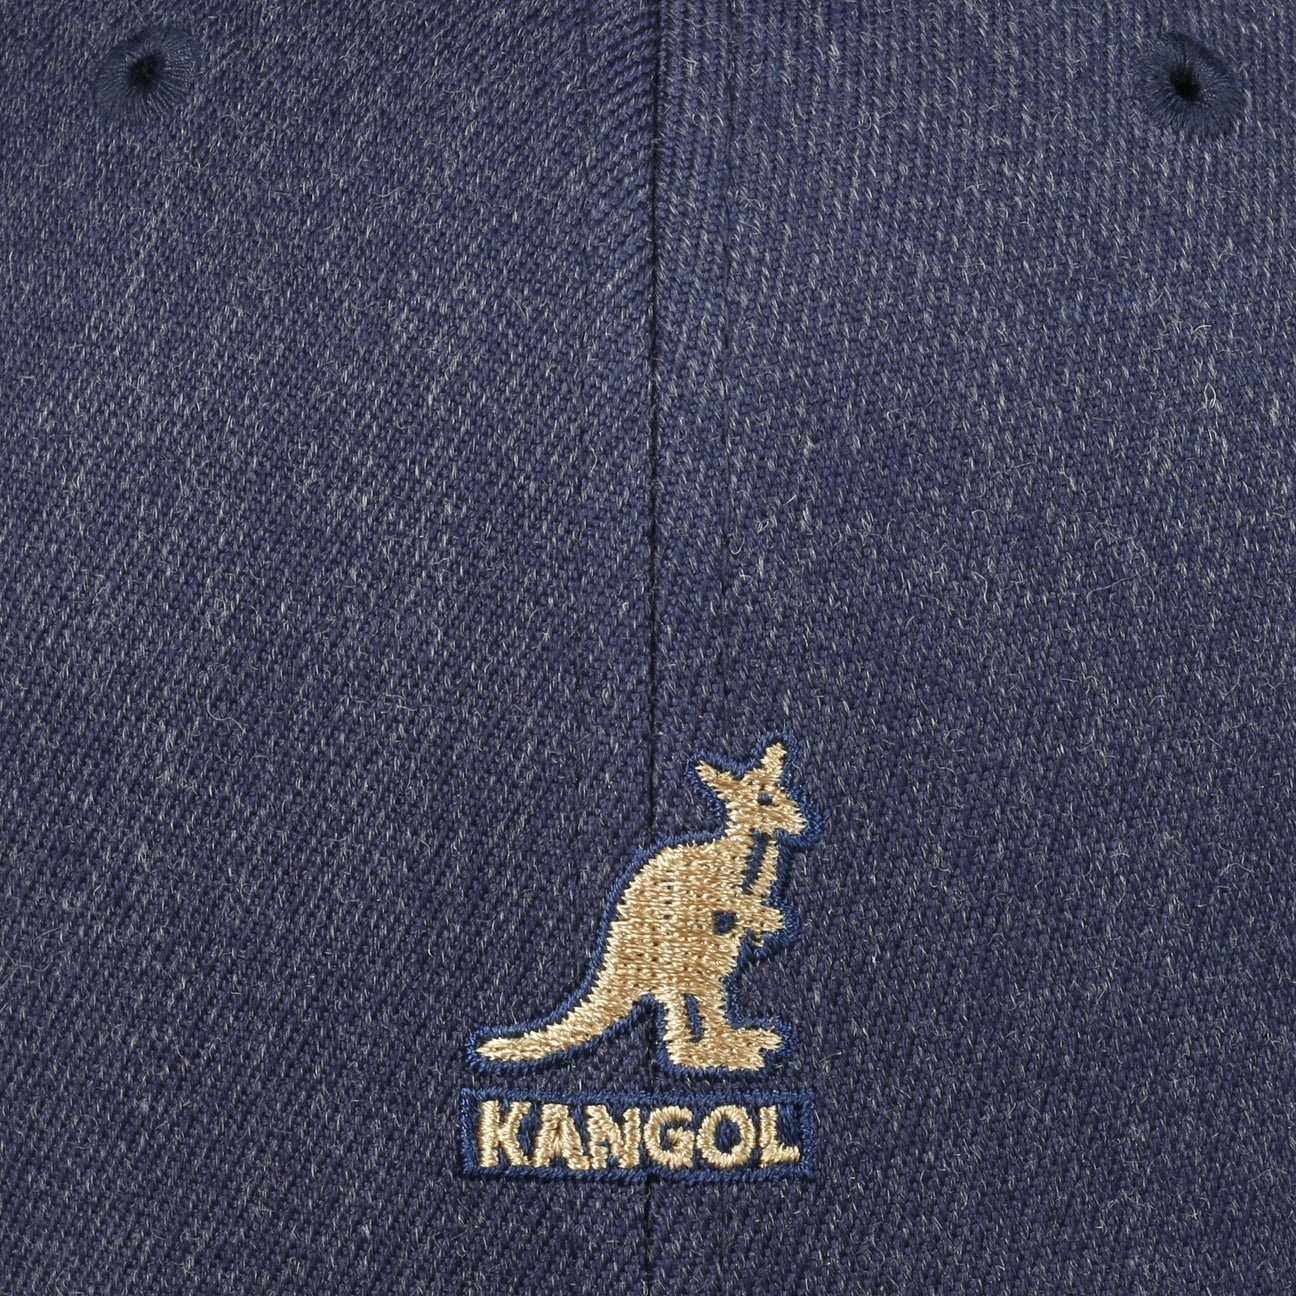 Kangol Baseball Cap blau-meliert Baseballcap (1-St) Hinten geschlossen